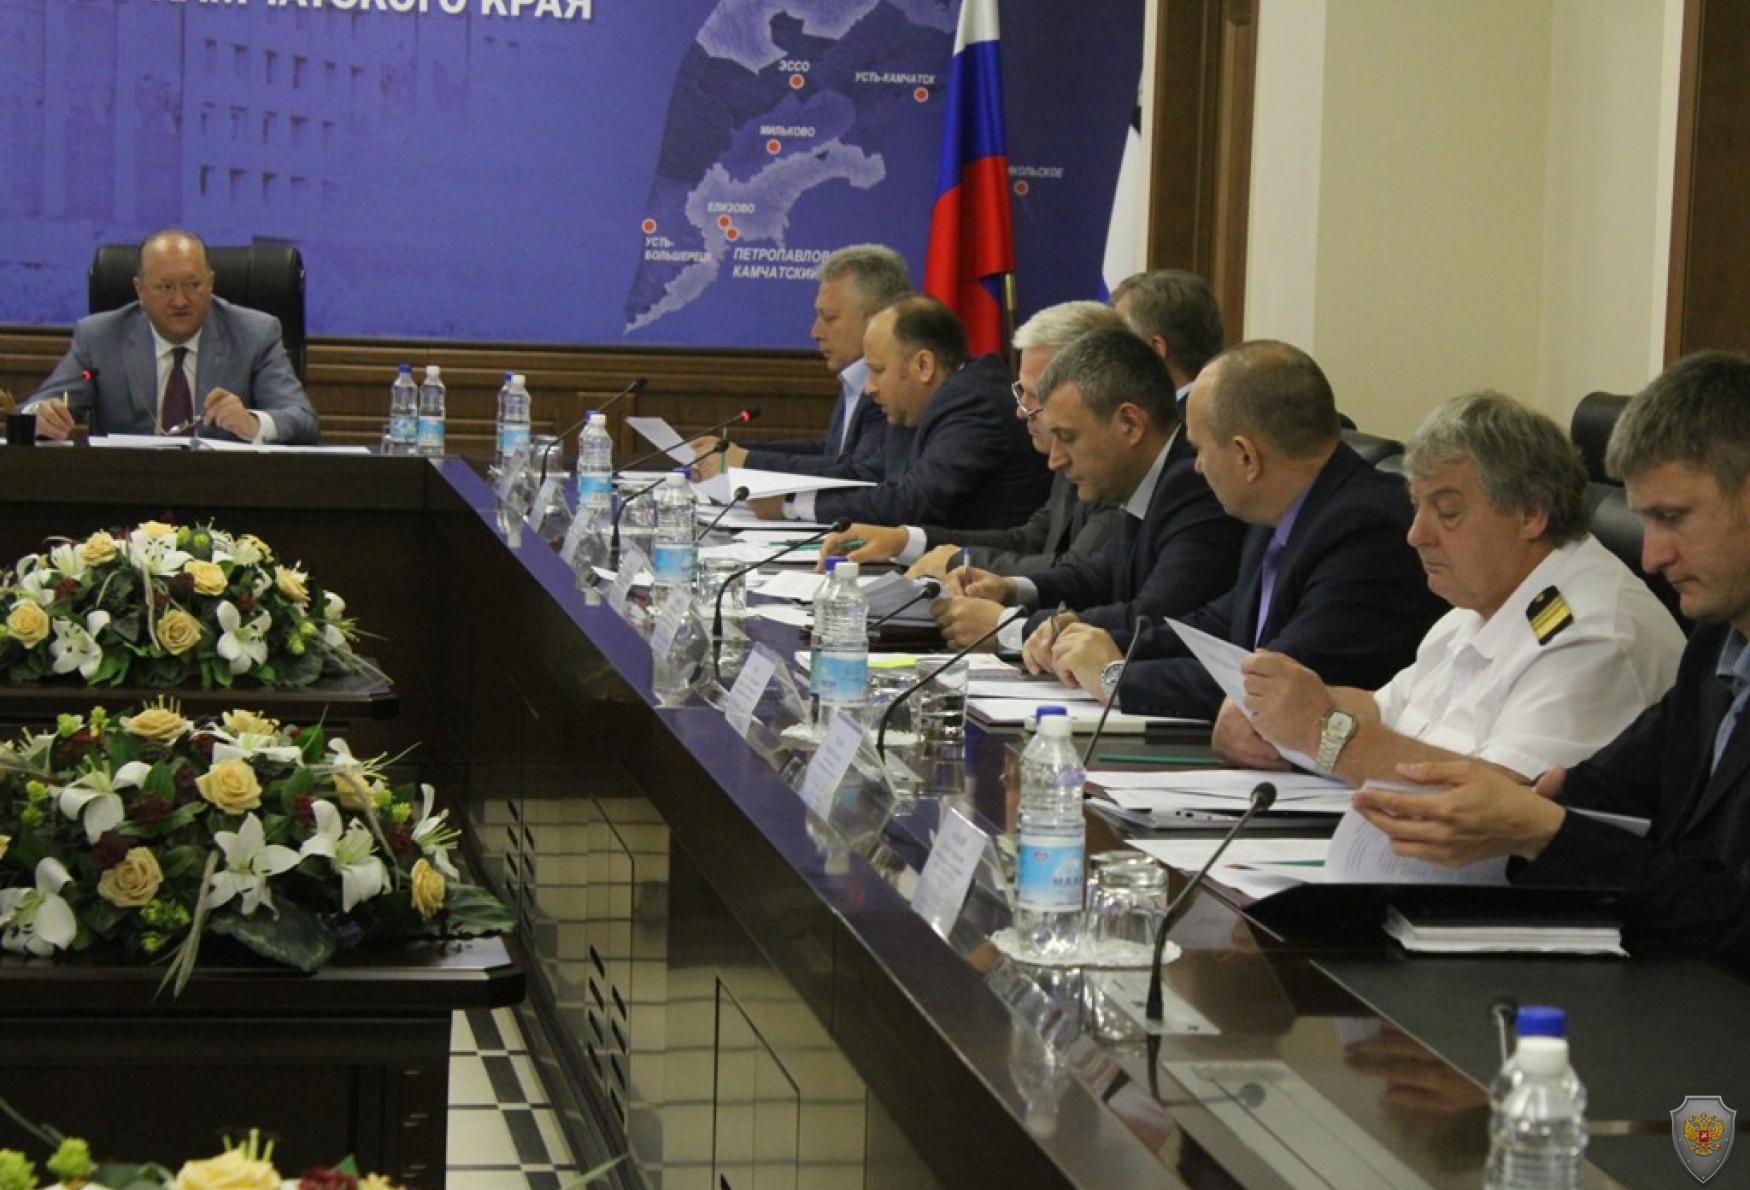 Заседание антитеррористической комиссии в Камчатском крае